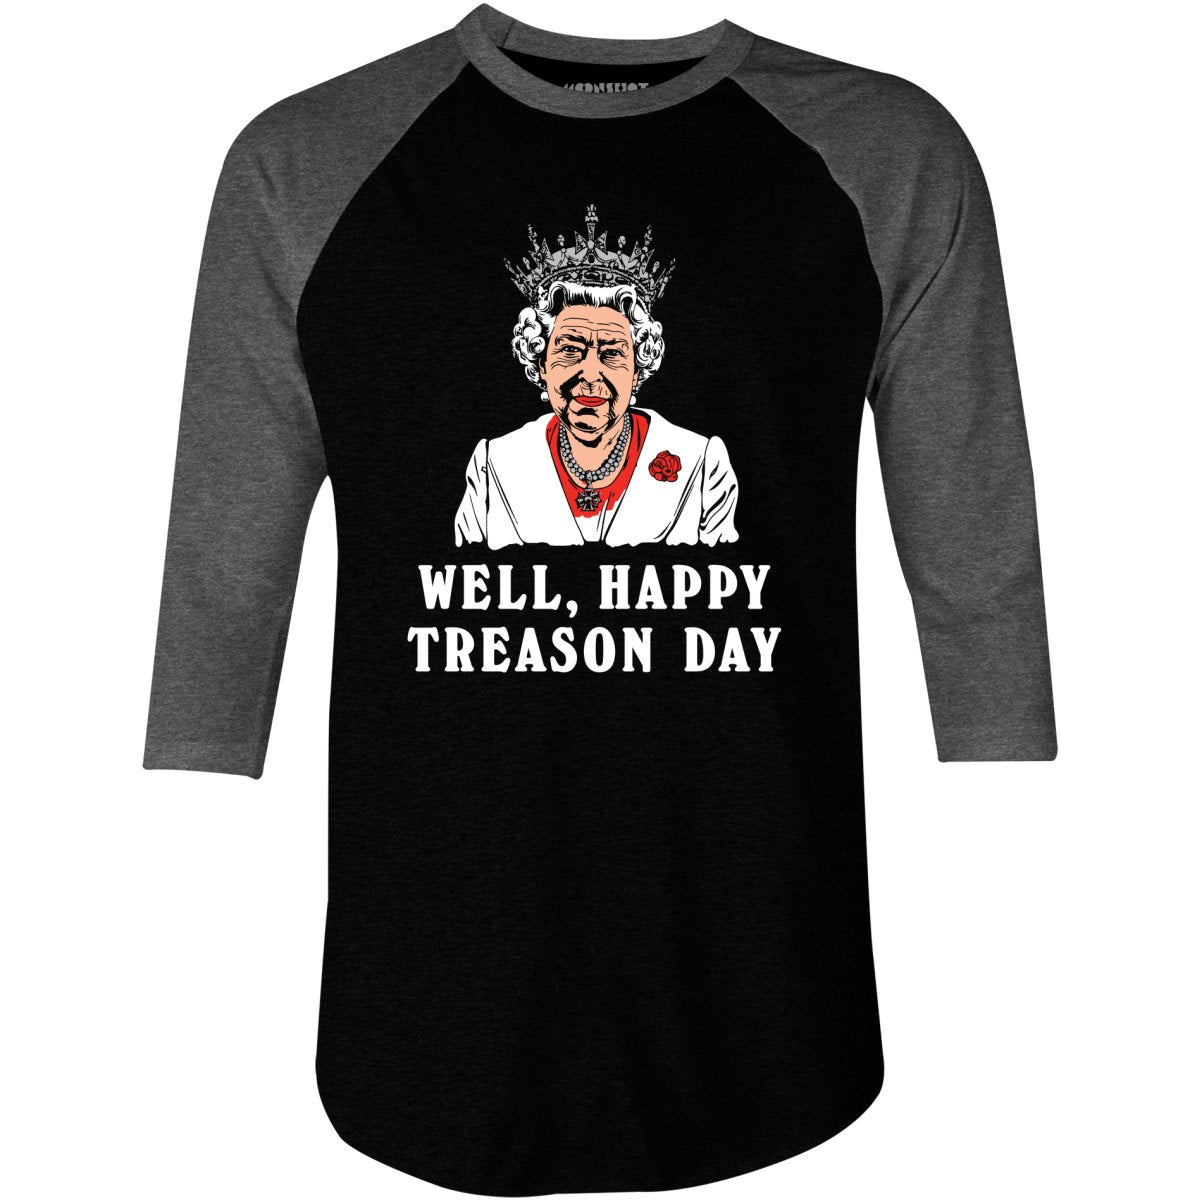 Well, Happy Treason Day - 3/4 Sleeve Raglan T-Shirt